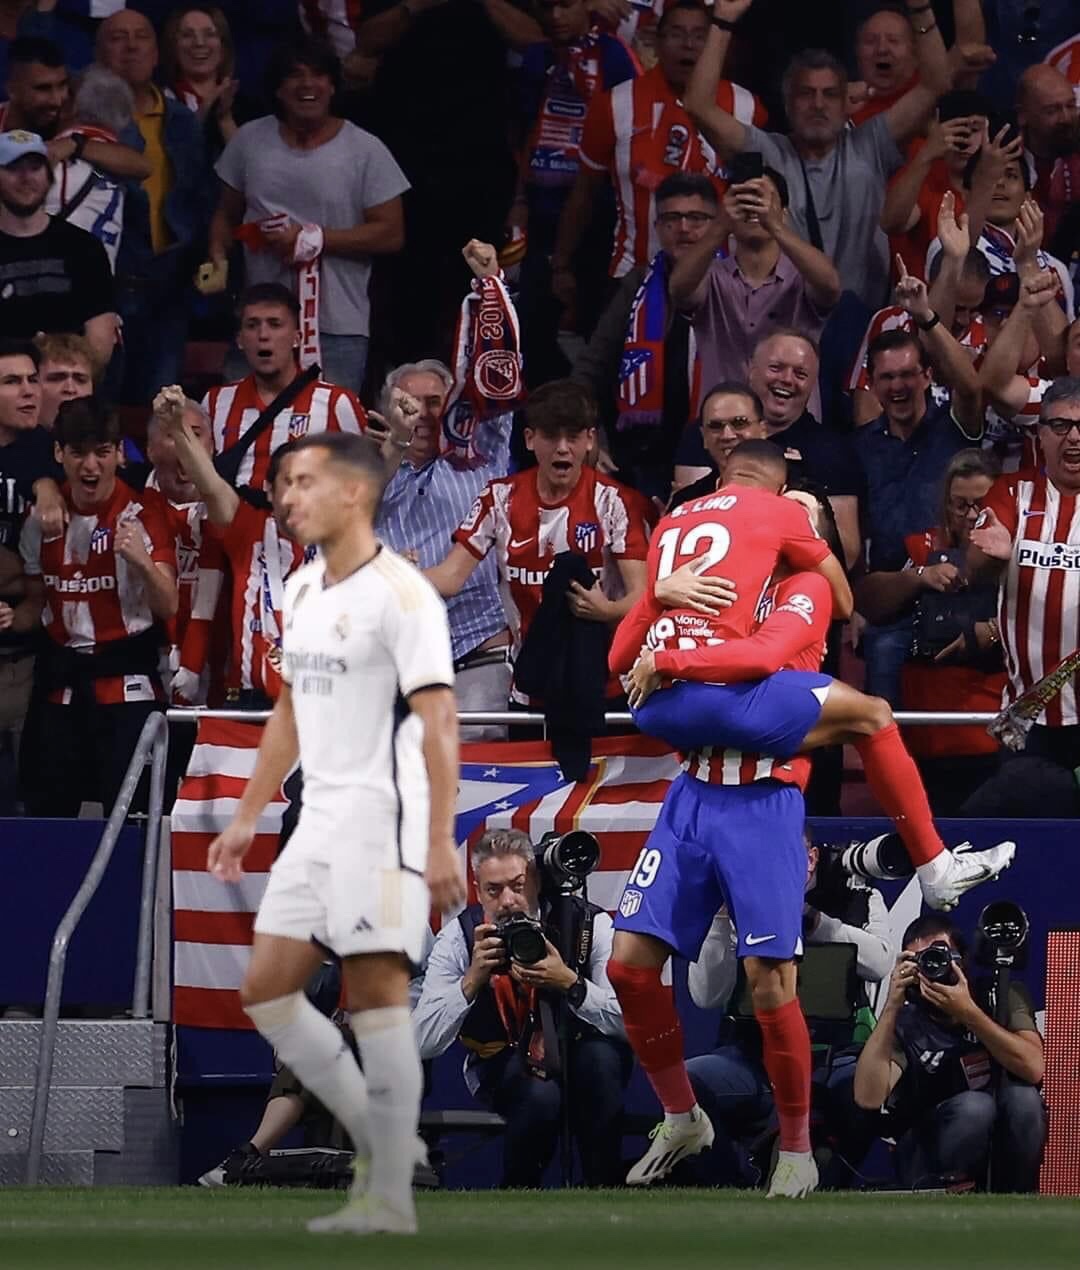 LaLiga : l’Atletico foudroie le Real dans le derby de Madrid